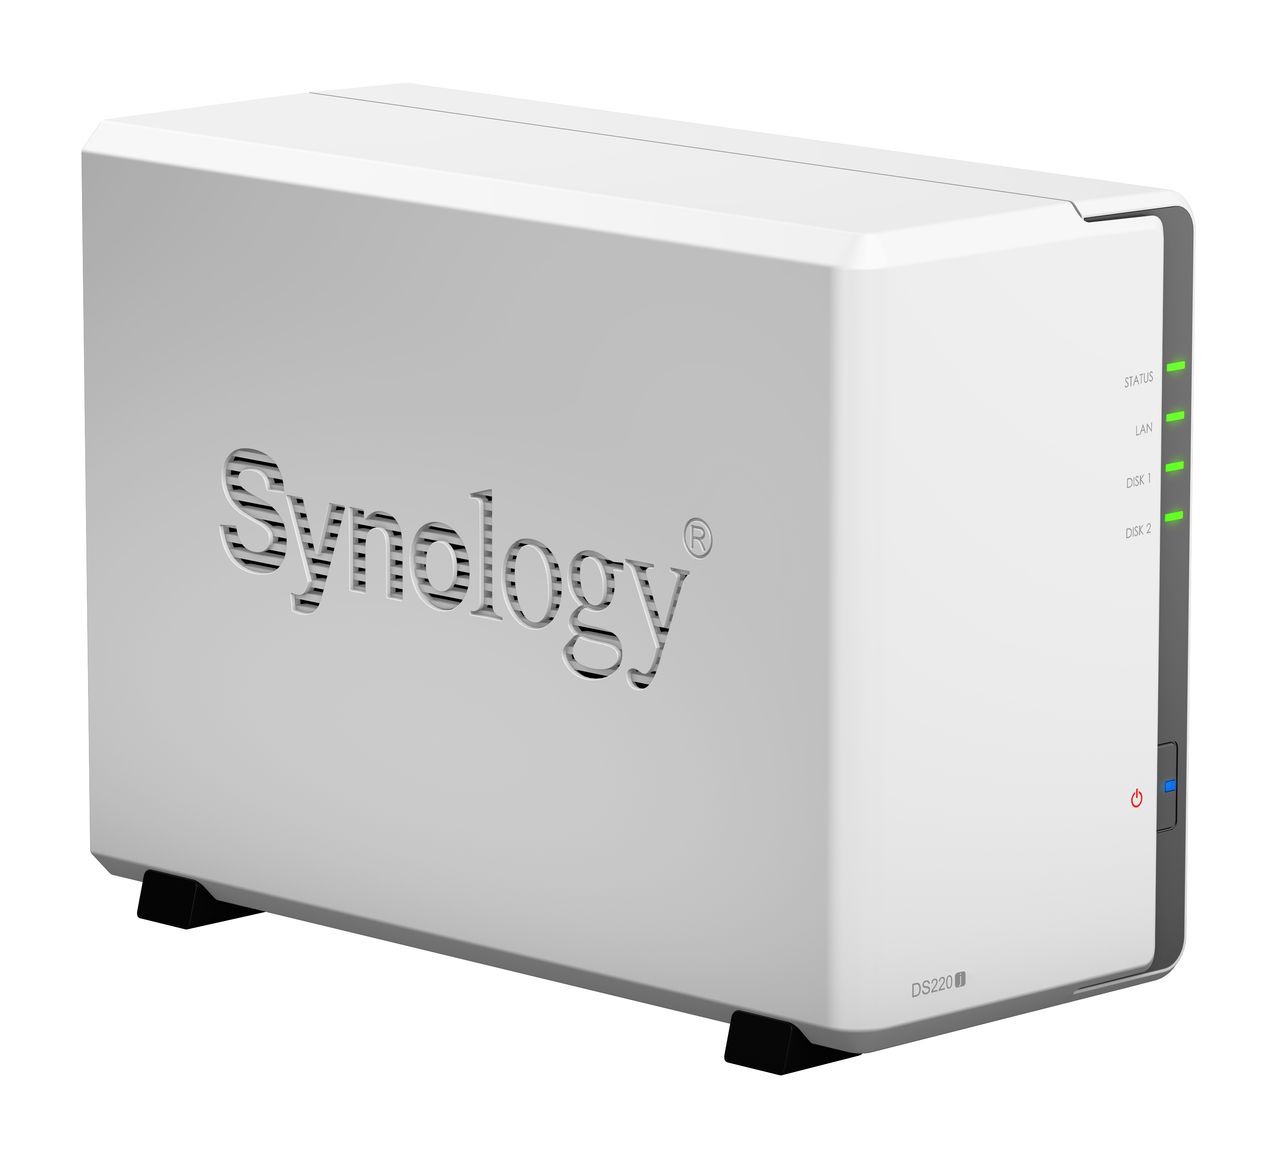 Synology DS220j, fot. materiały prasowe.